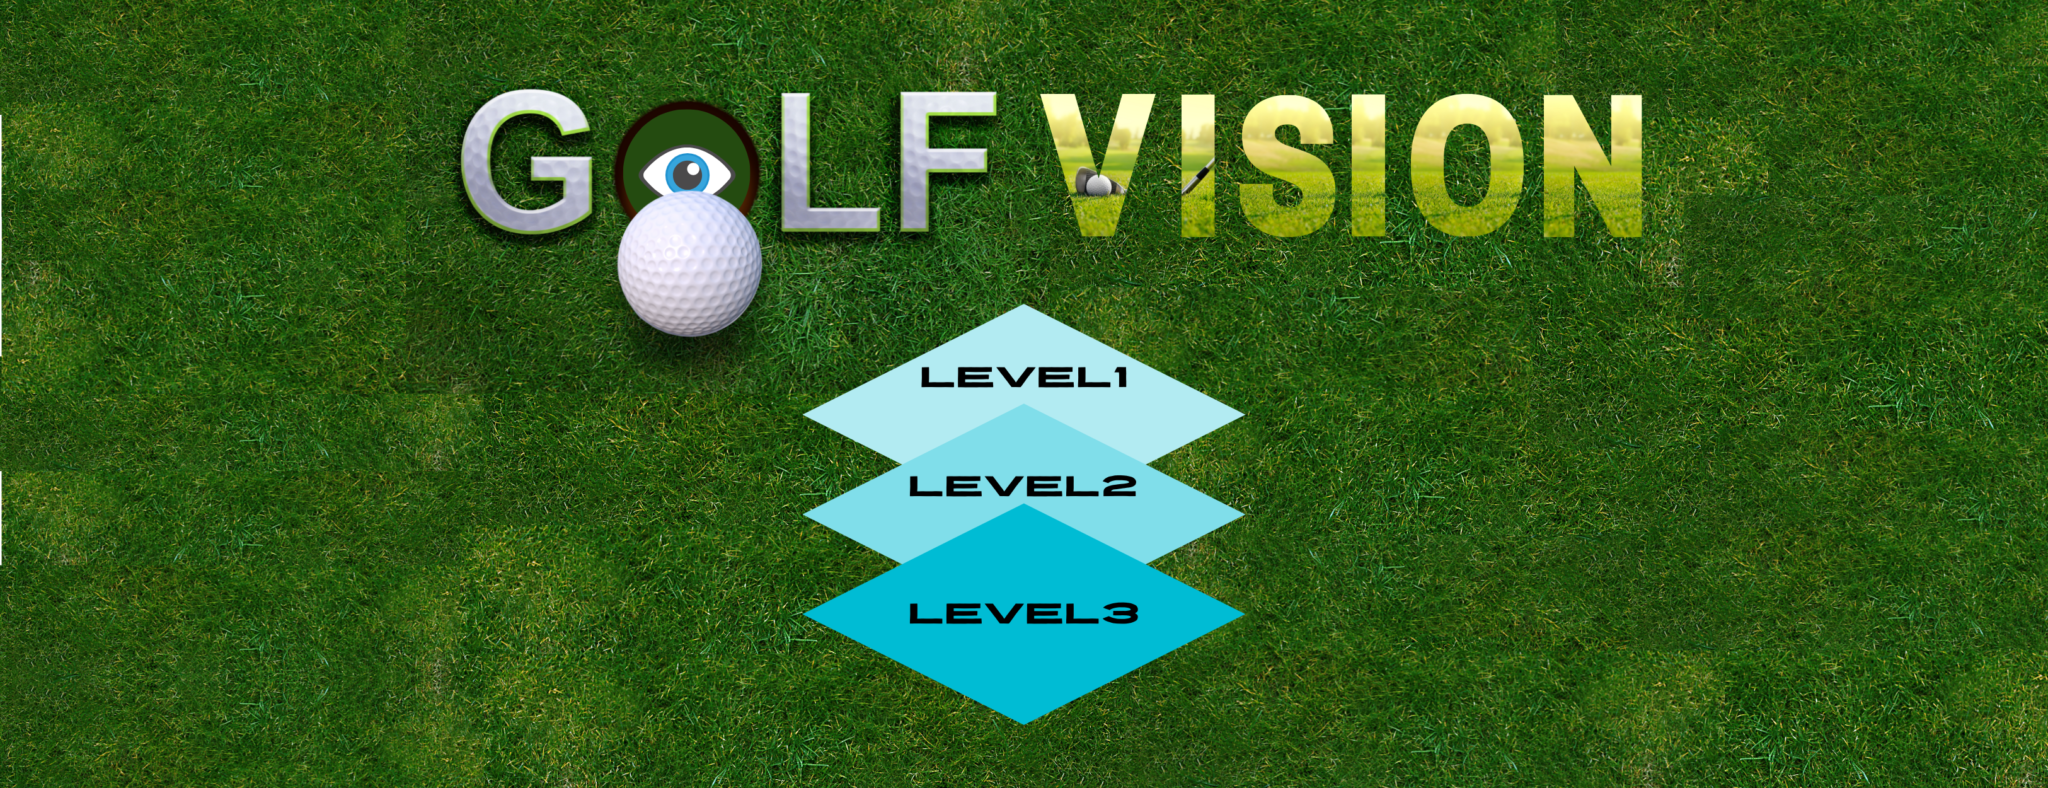 ゴルフスポーツビジョン【Level 3】